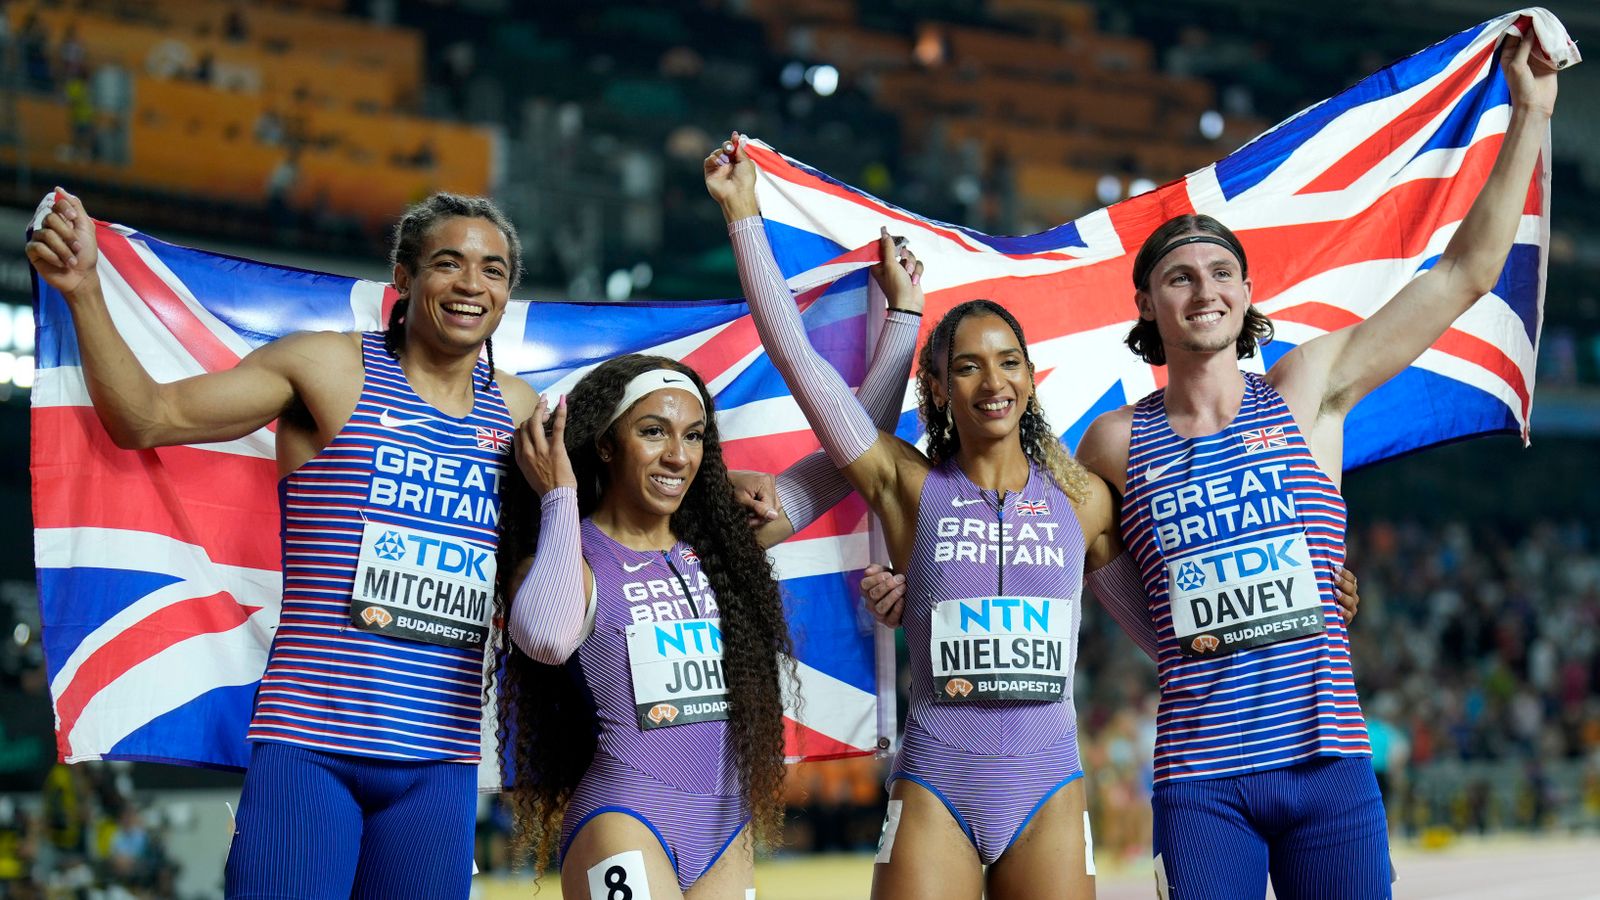 La Grande-Bretagne remporte l’argent aux Championnats du monde d’athlétisme en relais mixte 4x400m après que les Pays-Bas ont laissé tomber le témoin |  Nouvelles d’athlétisme